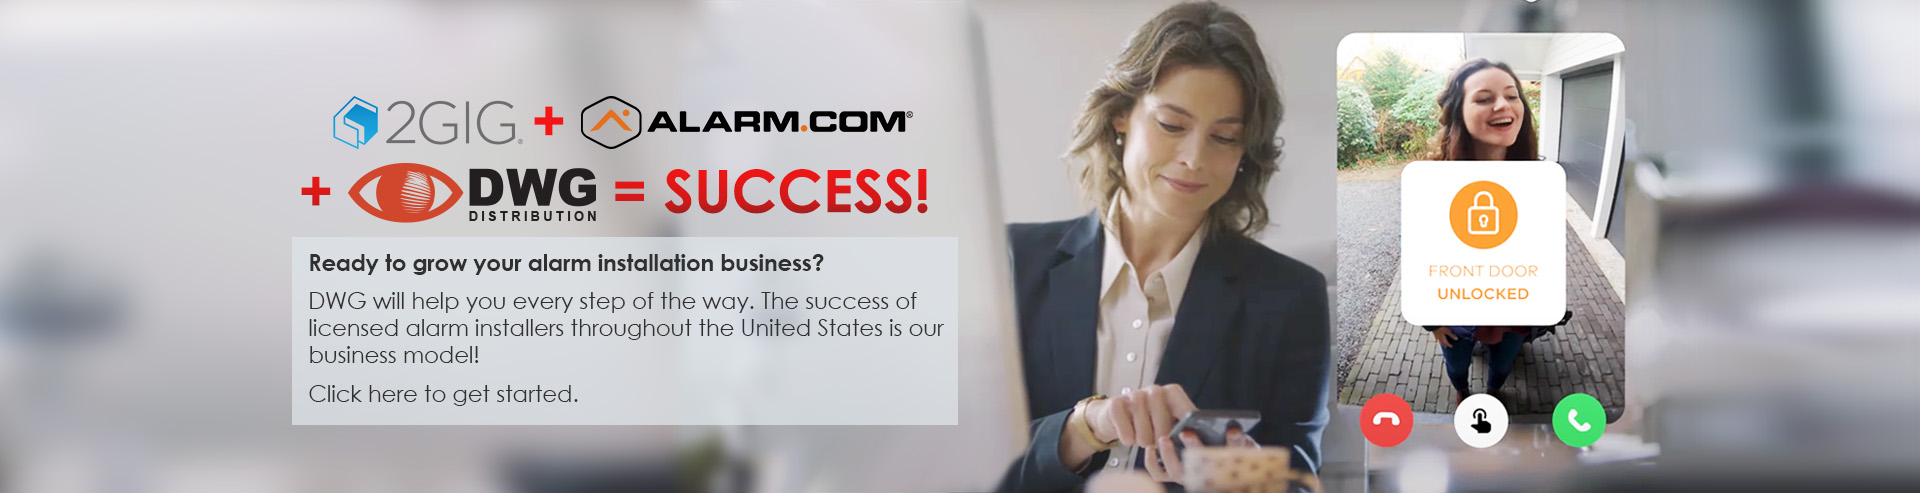 2GIG + Alarm.com = Success!